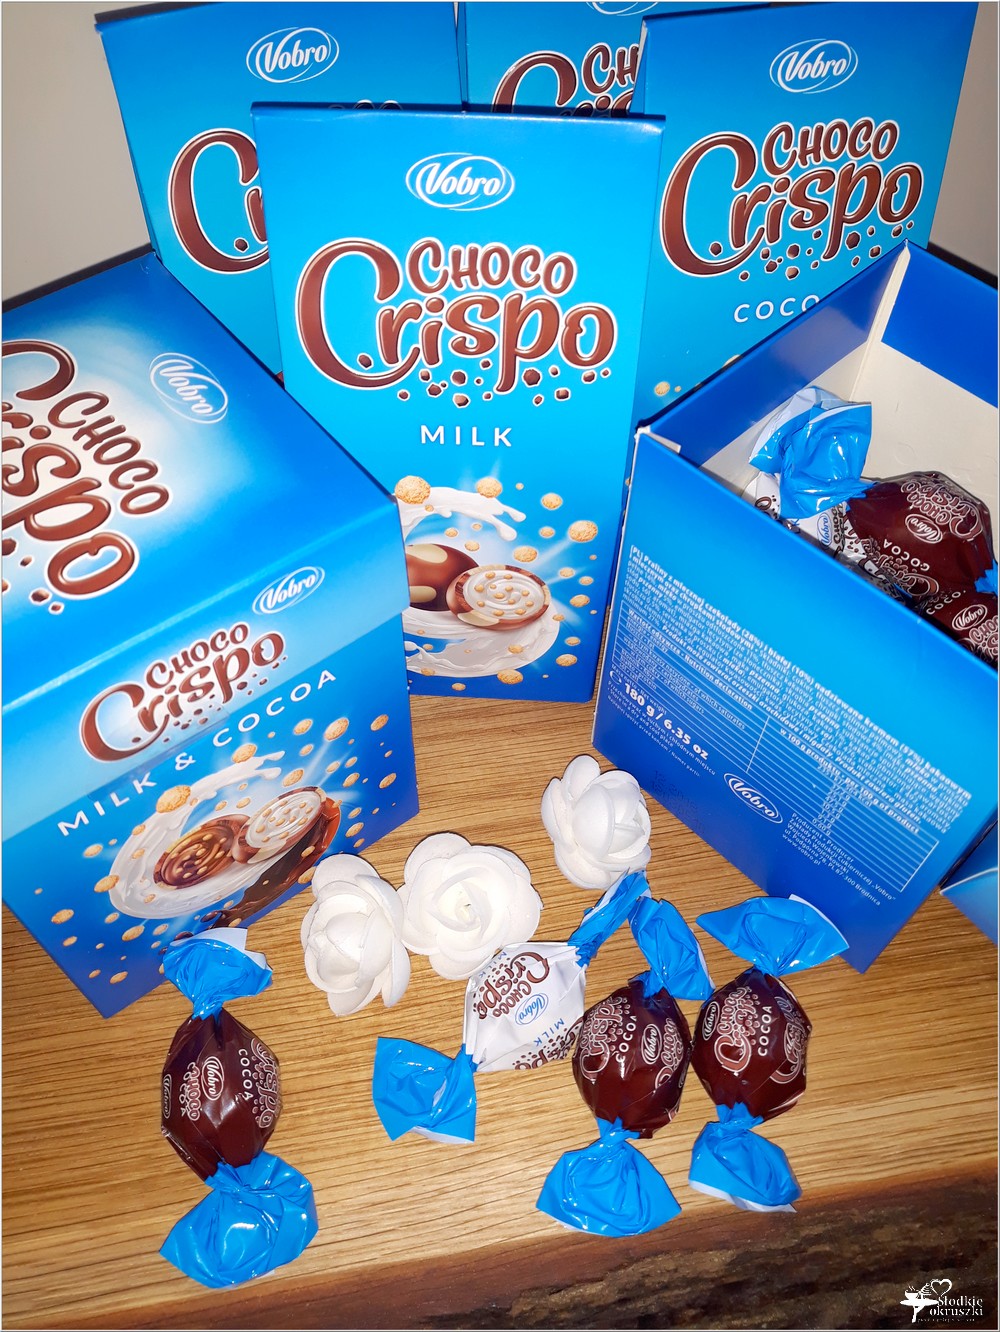 Słodki świat Vobro. Czekoladowe praliny Choco Crispo (2)